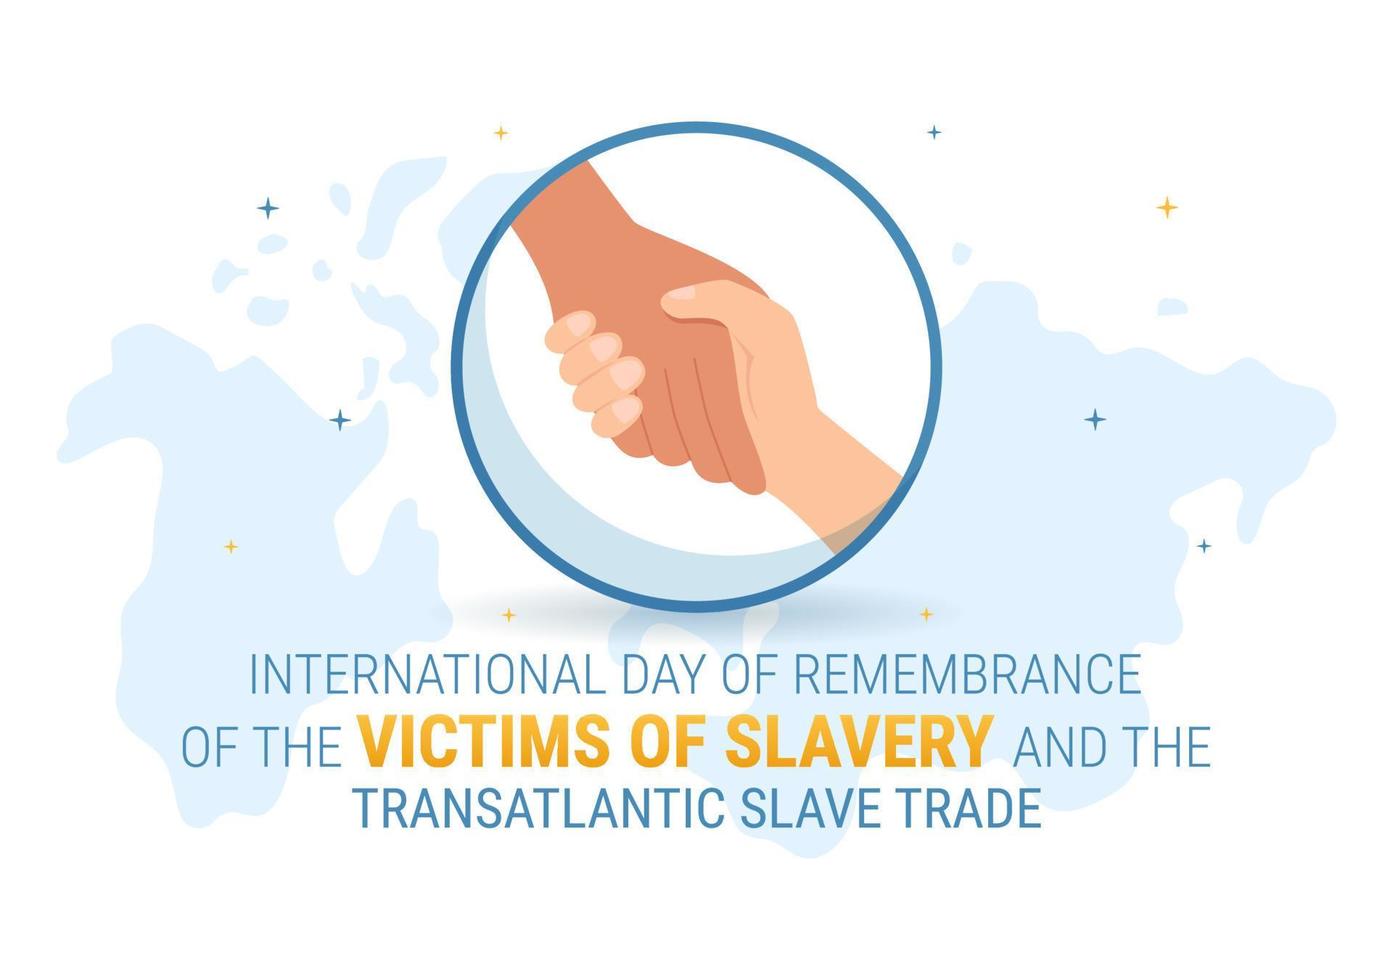 journée internationale du souvenir des victimes de l'esclavage et de la traite transatlantique des esclaves illustration dessinée à la main avec des menottes cassées sur la main vecteur